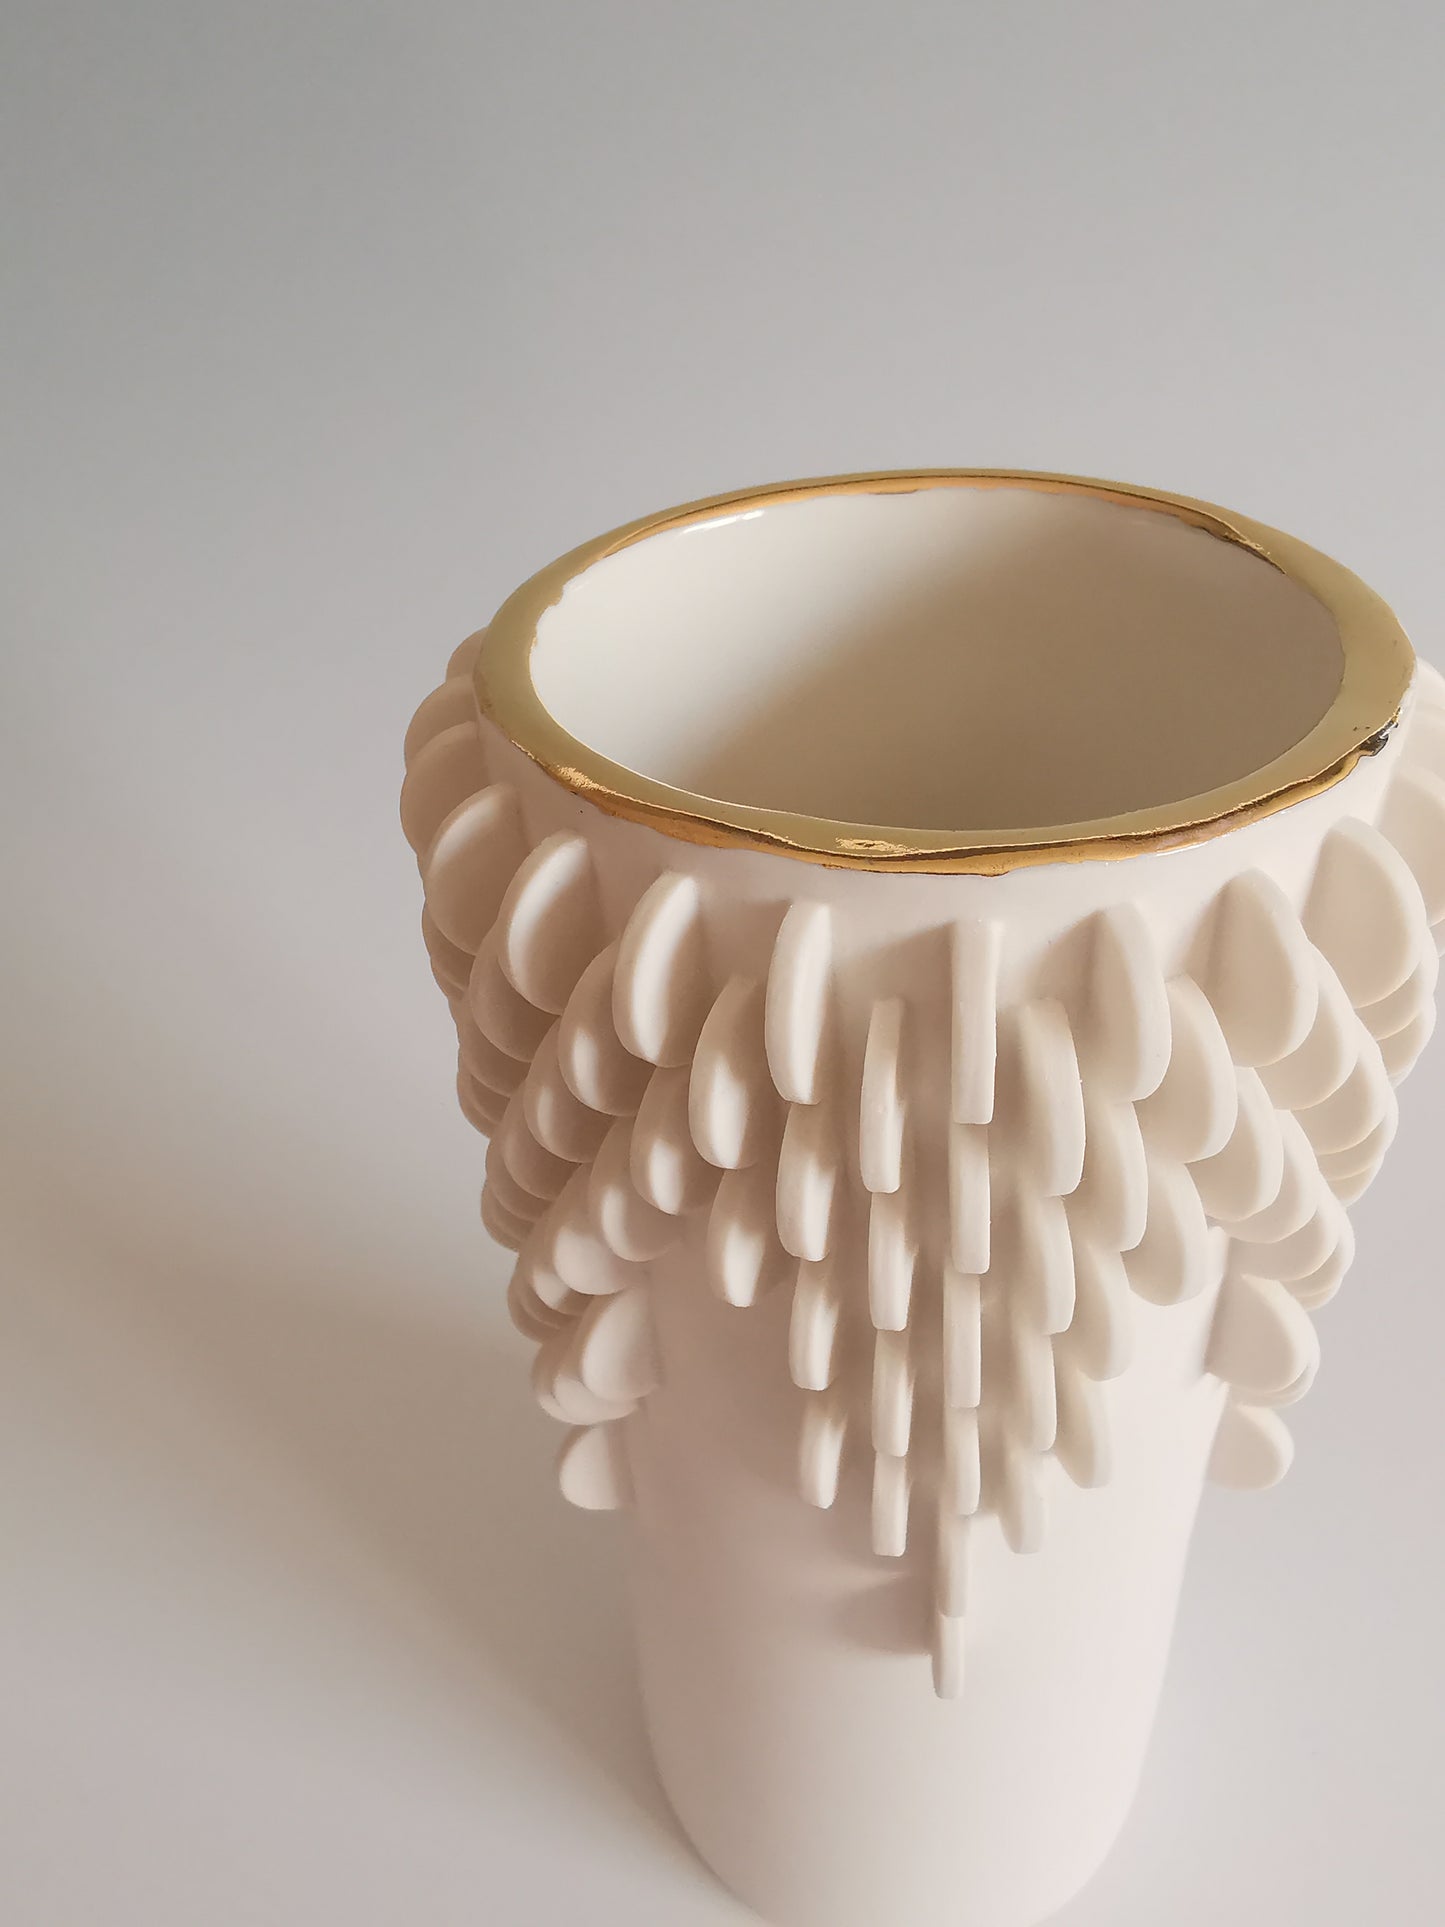 Medium Vase with Gold